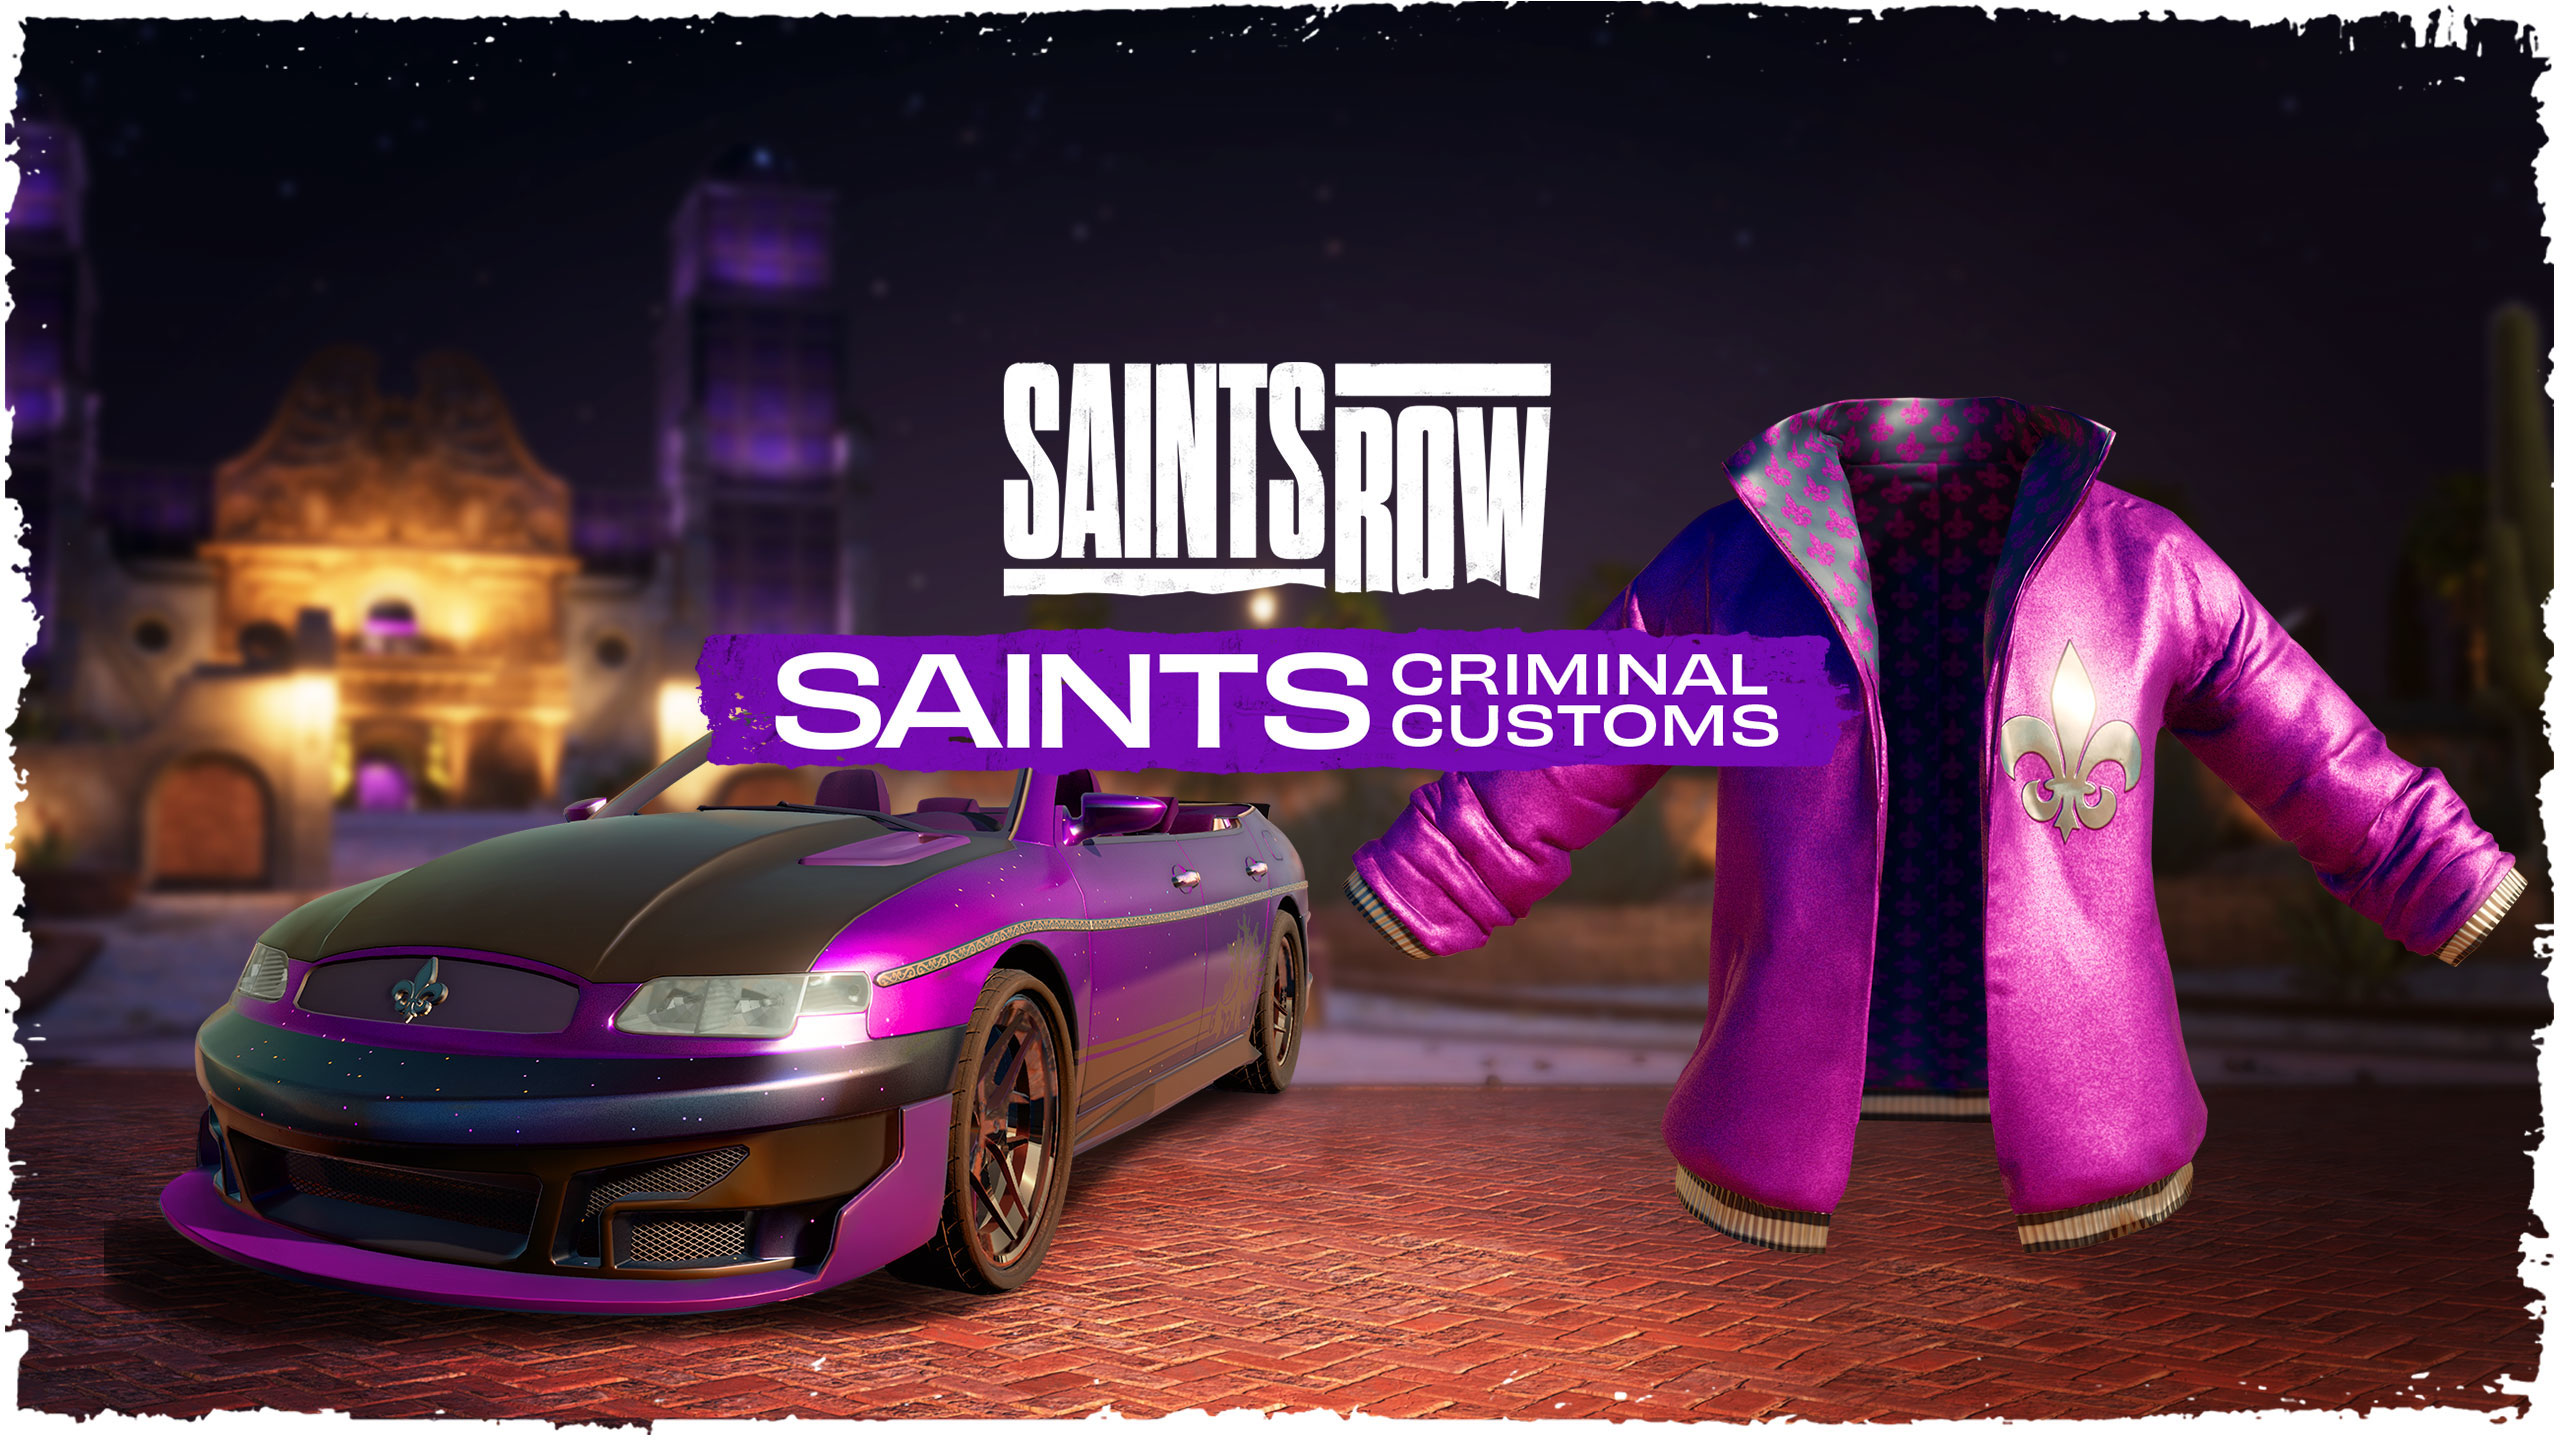 (68.2$) Saints Row Saints Criminal Customs Edition Epic Games CD Key